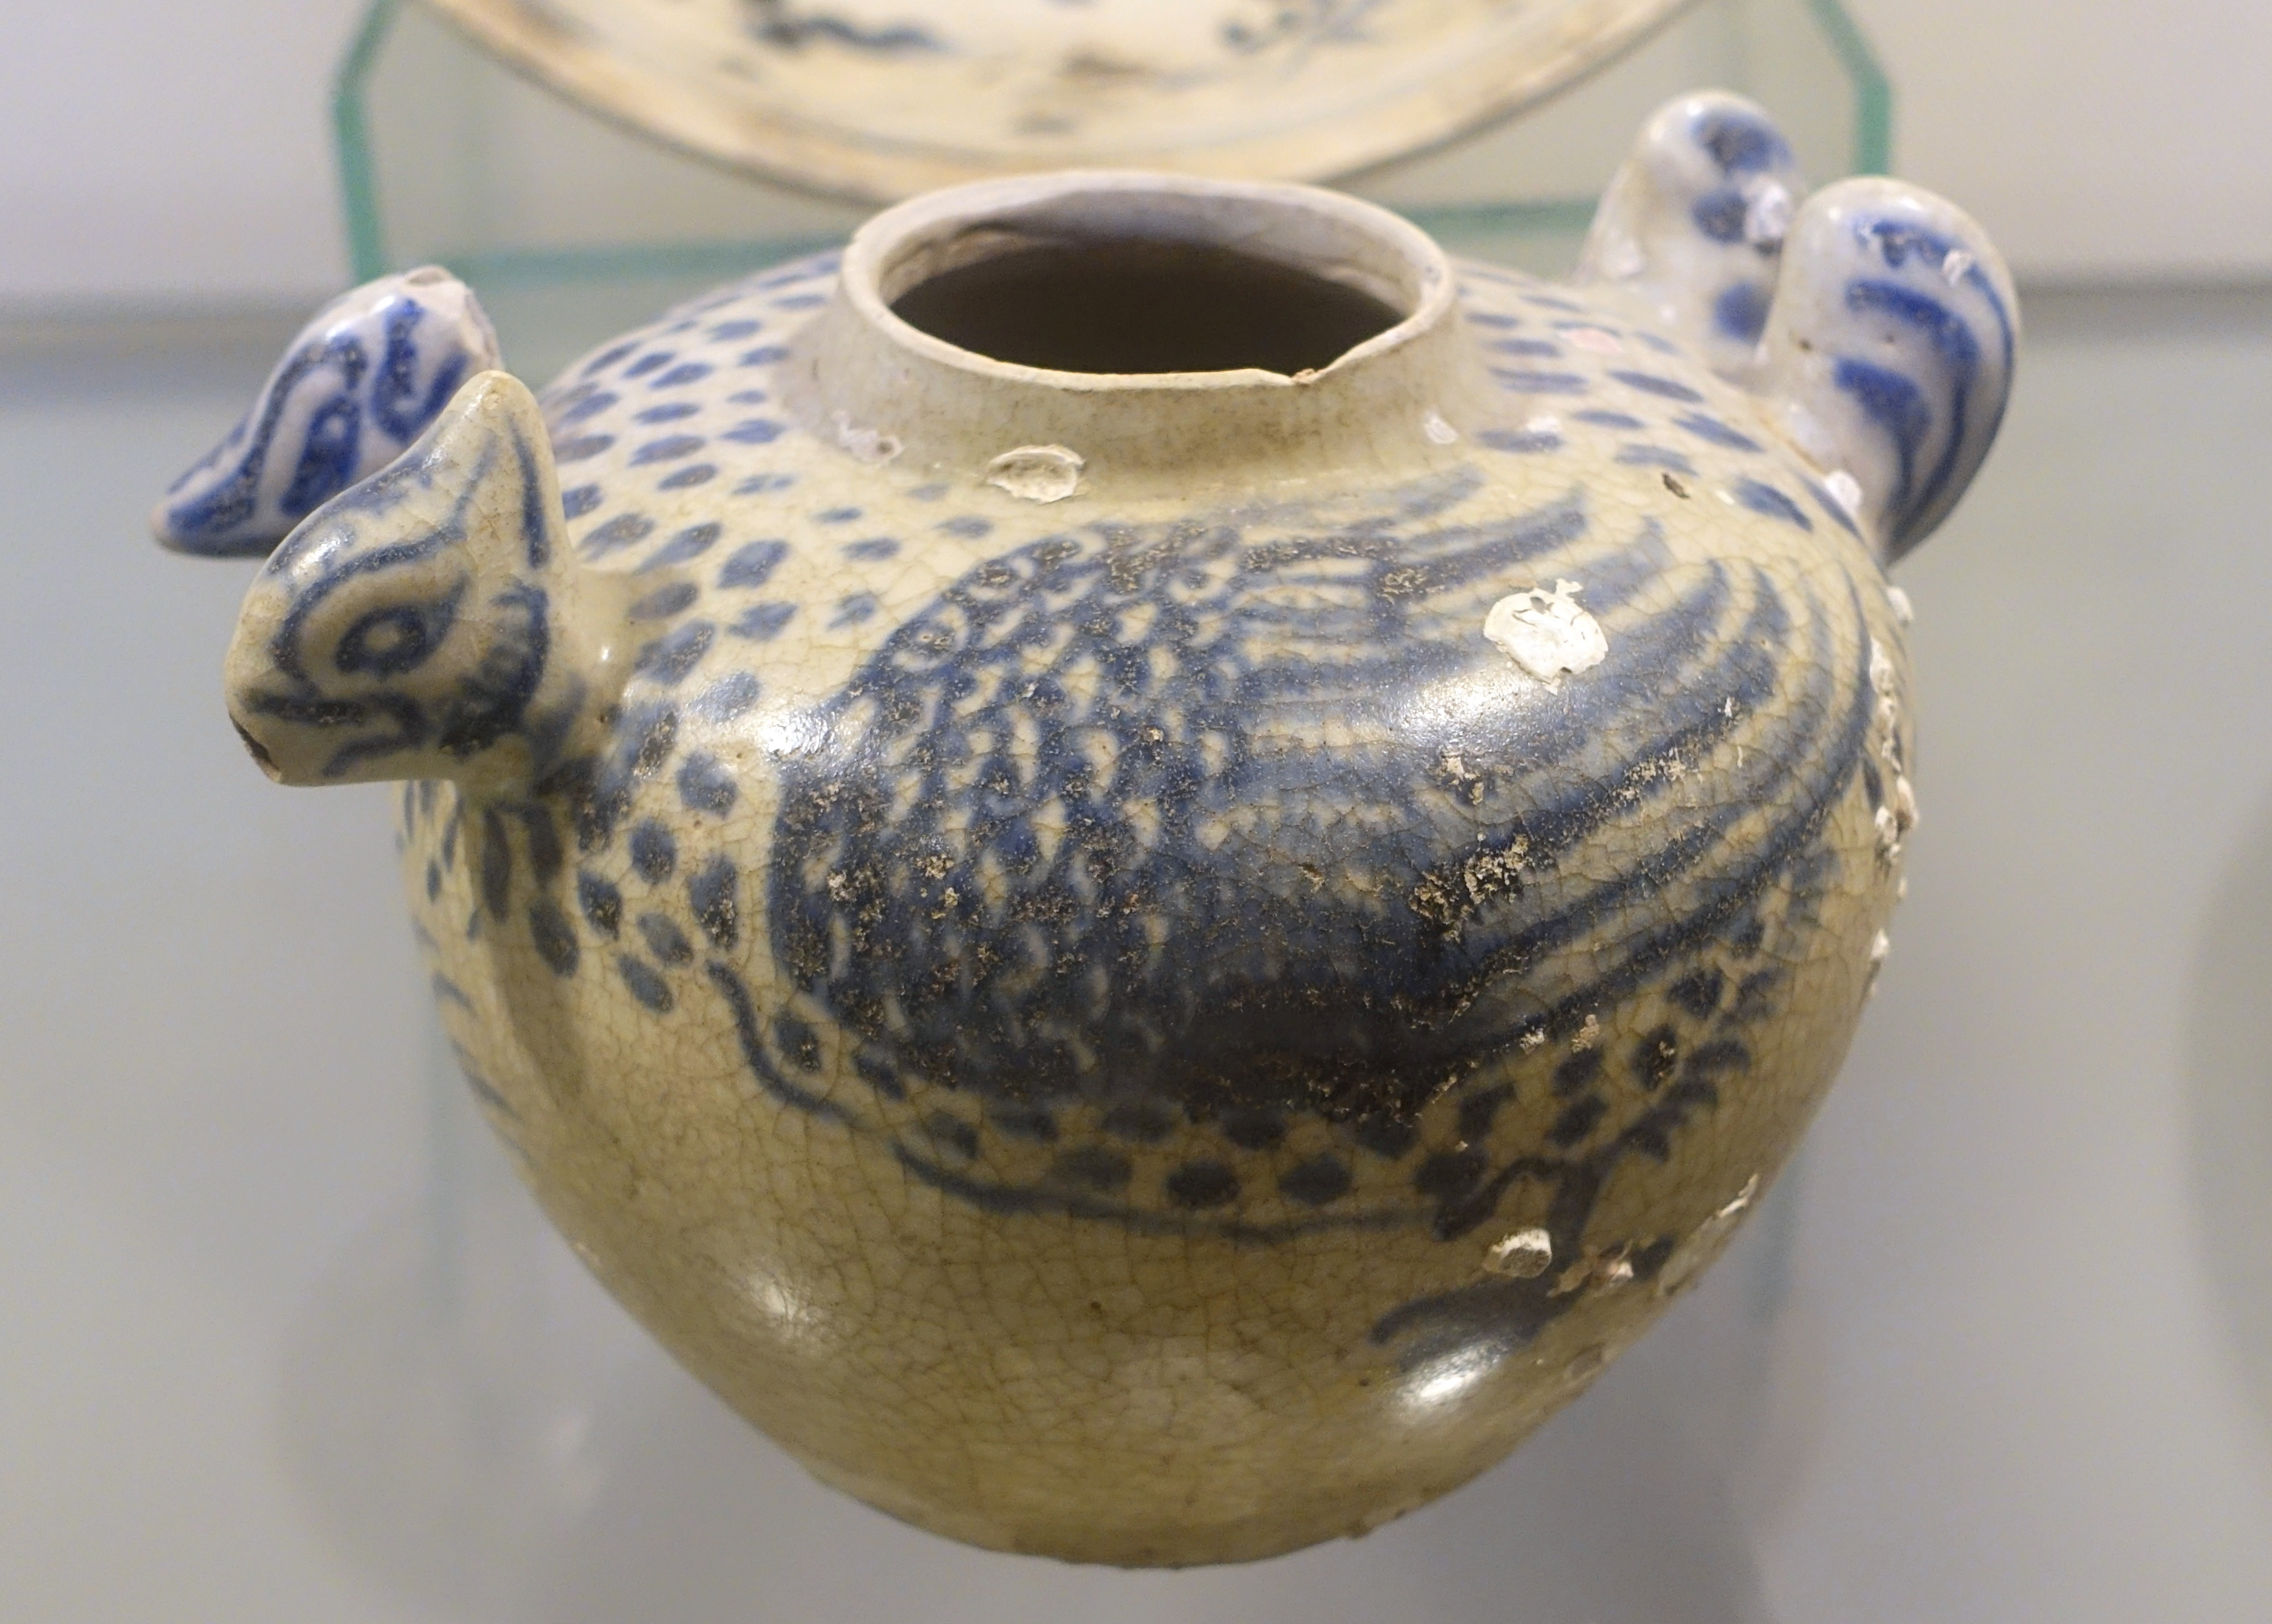 White Pottery Vase Of Filepot Shaped Like Mandarin Duck White Glaze Ceramic with Cobalt Inside Filepot Shaped Like Mandarin Duck White Glaze Ceramic with Cobalt Blue Patterns